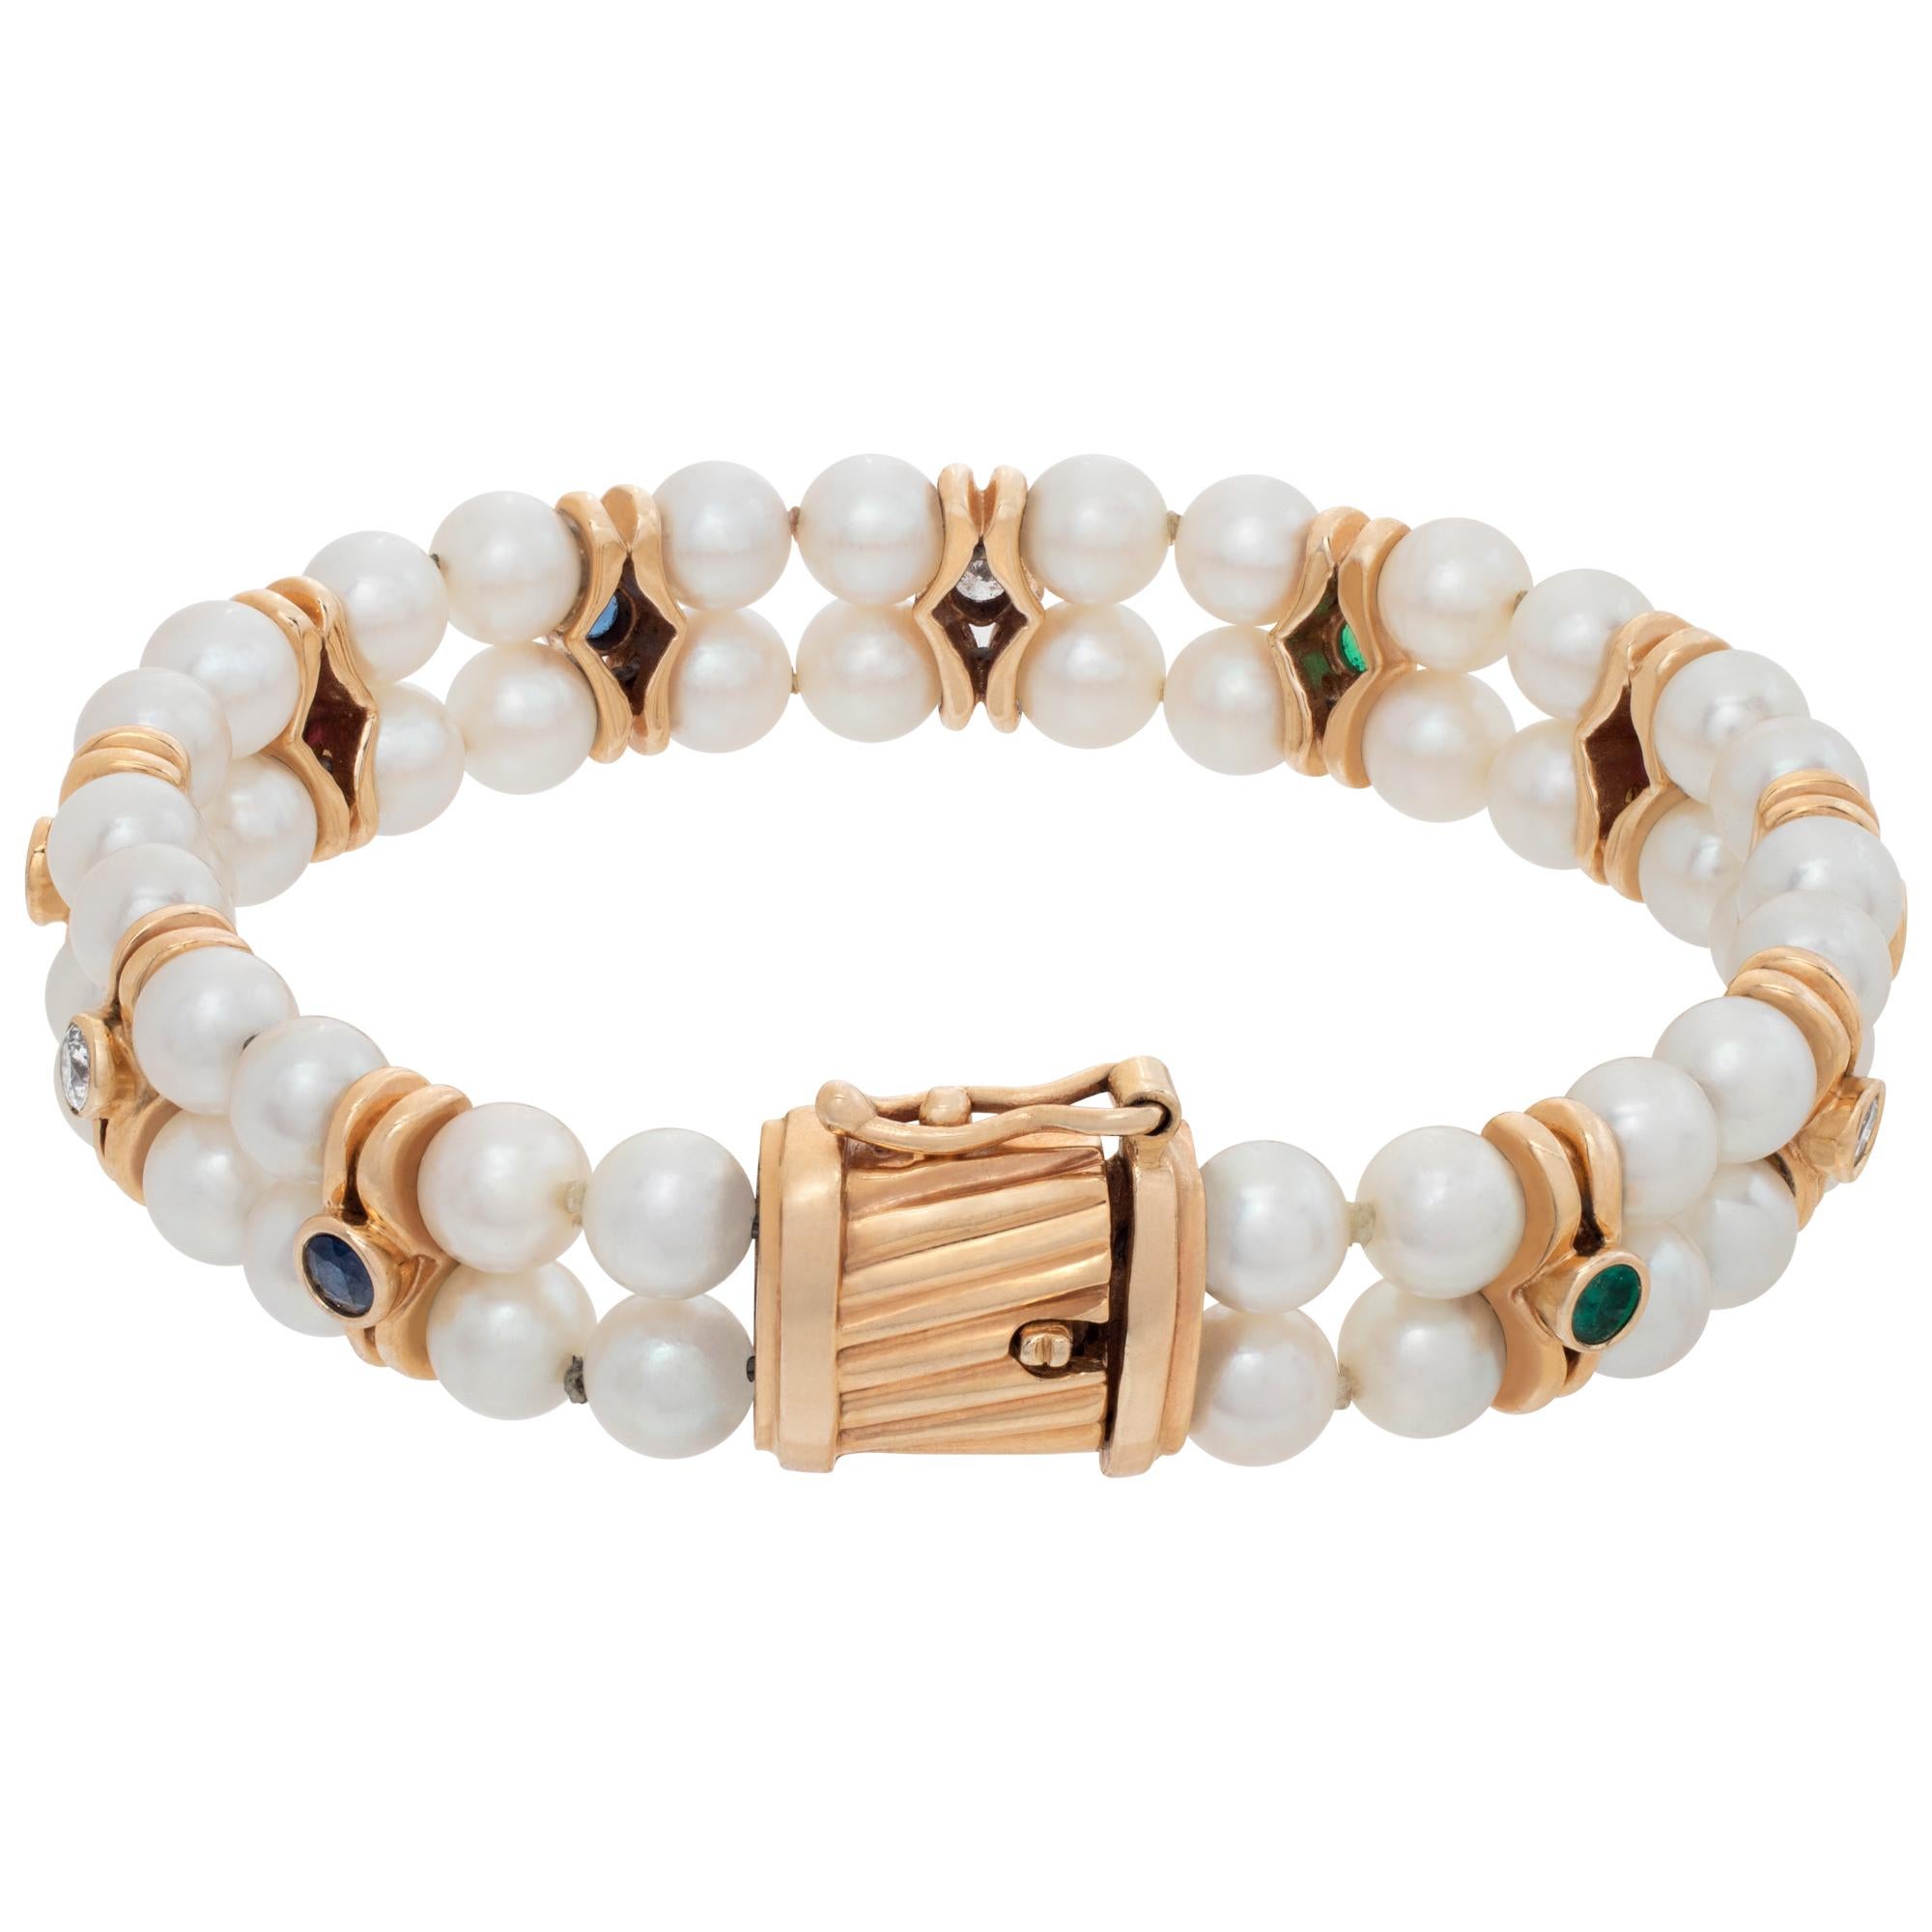 14k gold pearl bracelet